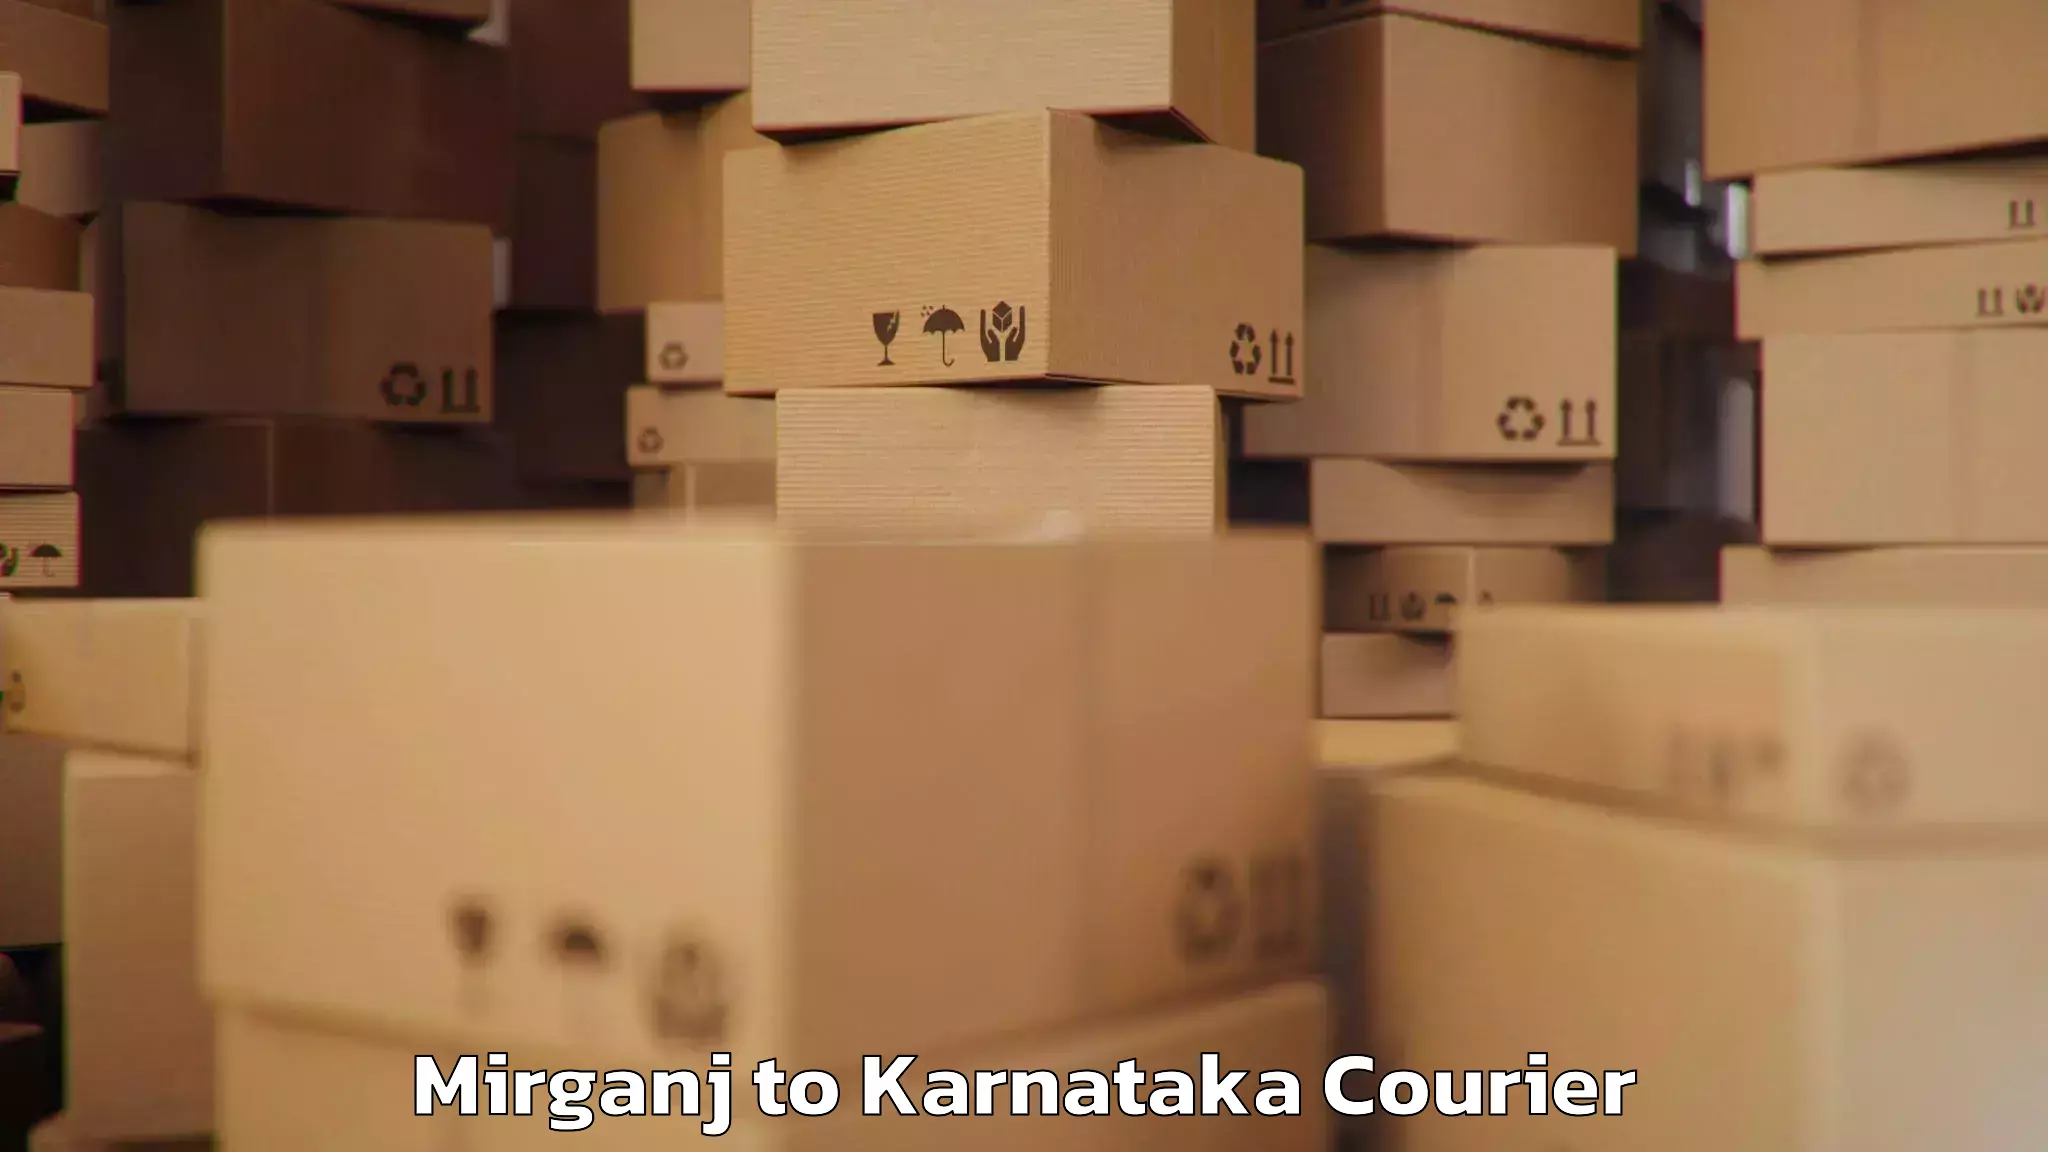 Baggage transport scheduler Mirganj to Karnataka